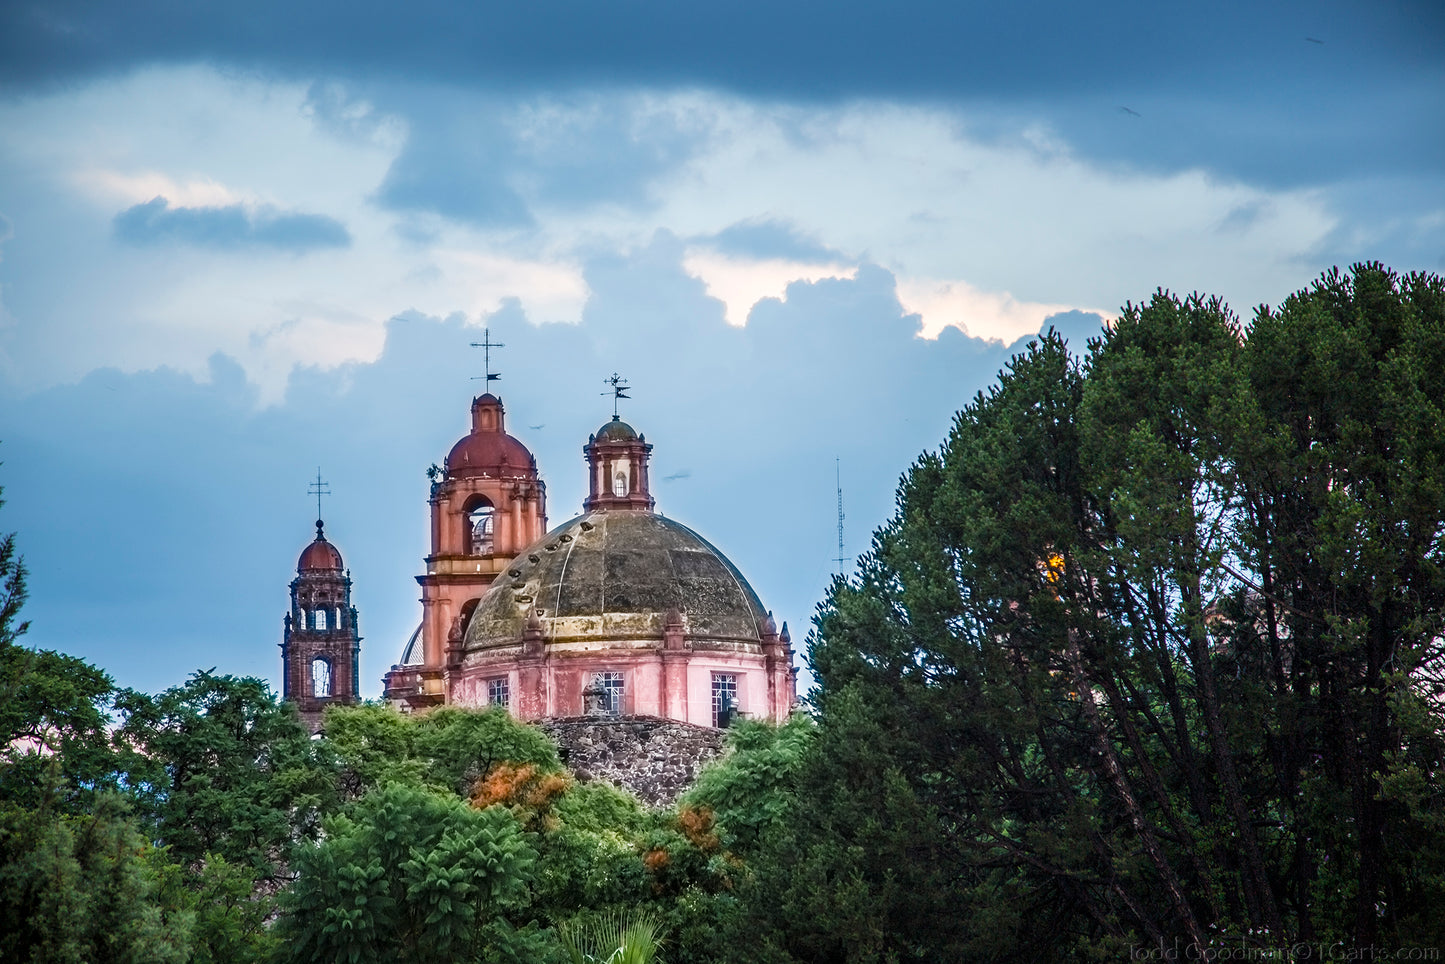 Templo de la Inmaculada Concepcion, San Miguel de Allende, Mexico